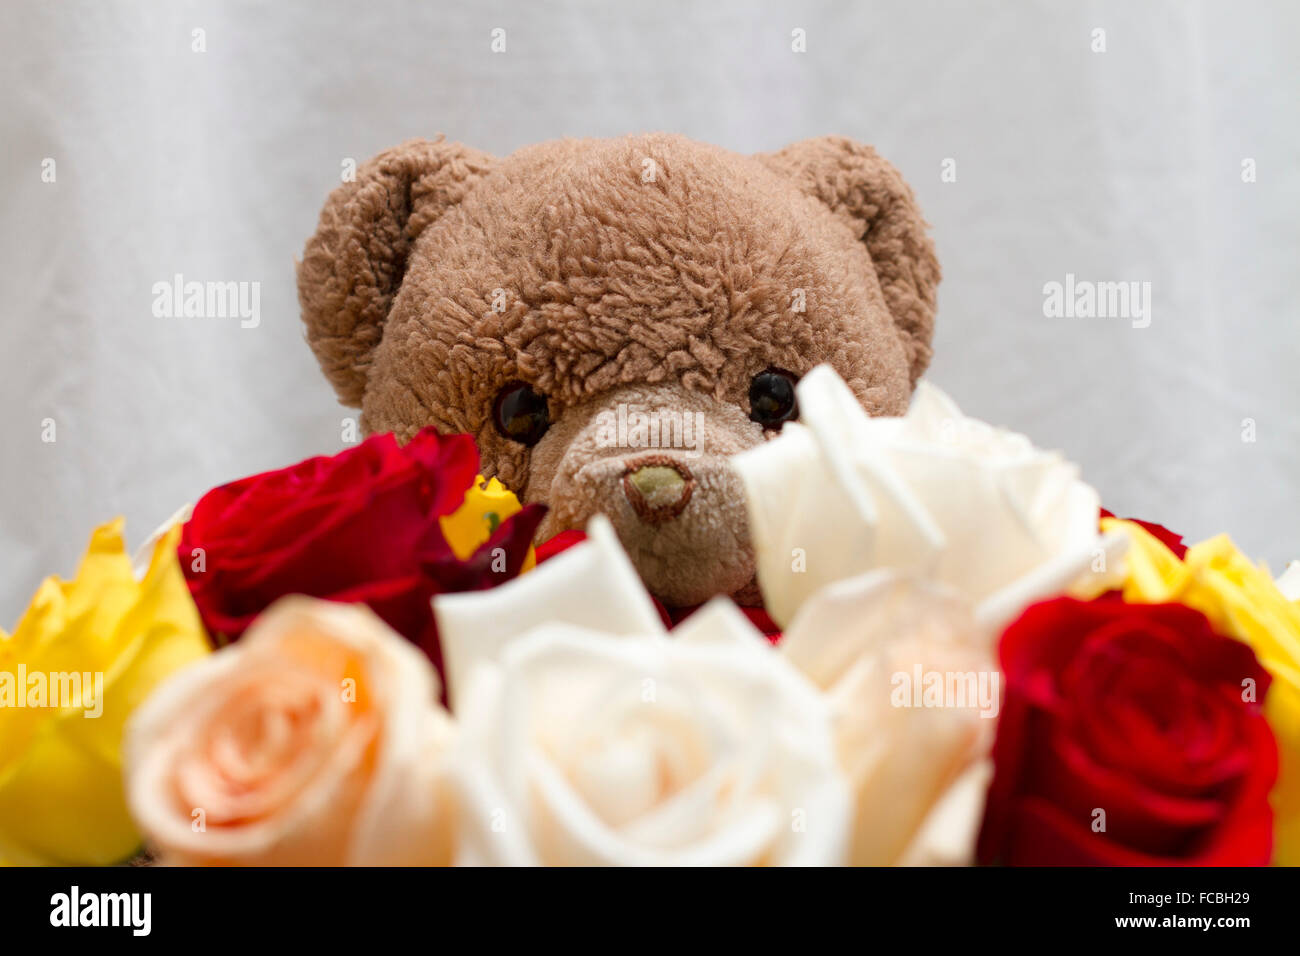 Mignon ours en peluche brun donnant un bouquet de blanc, jaune, rouge,  orange roses. Fond blanc avec la peluche derrière les fleurs Photo Stock -  Alamy